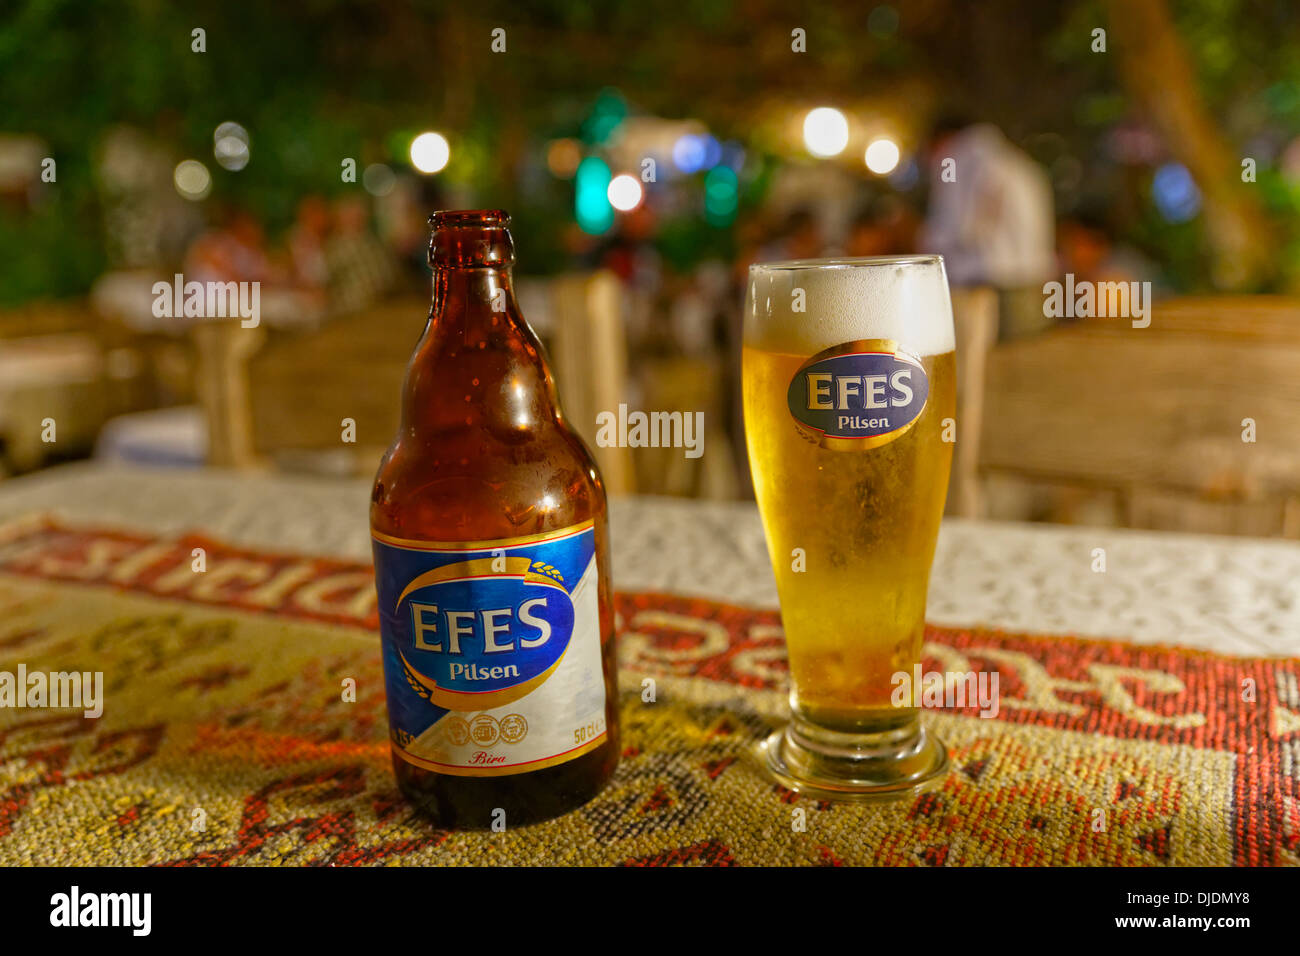 Efes Pilsen bière bouteille et verre de bière, Dalyan, Muğla Province, Riviera turque ou Côte Turquoise, la mer Egée, en Turquie Banque D'Images